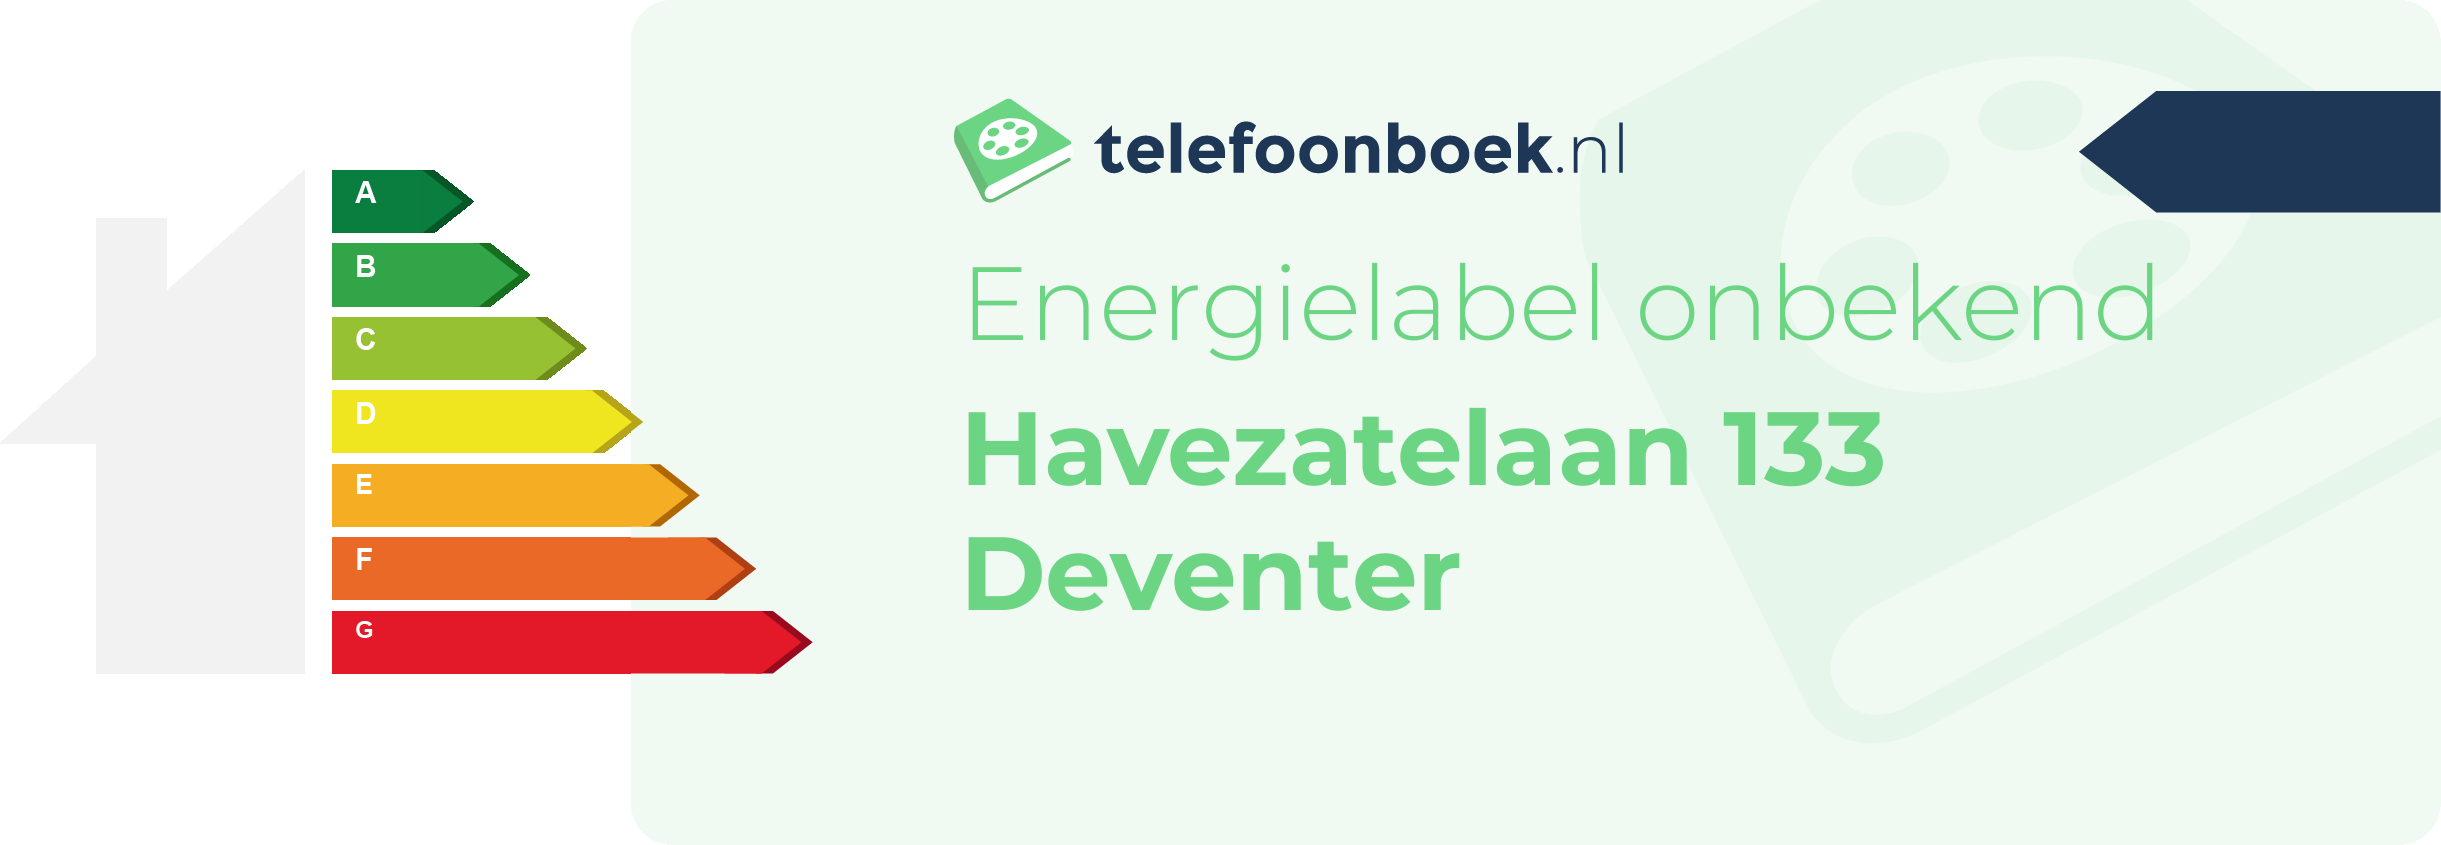 Energielabel Havezatelaan 133 Deventer